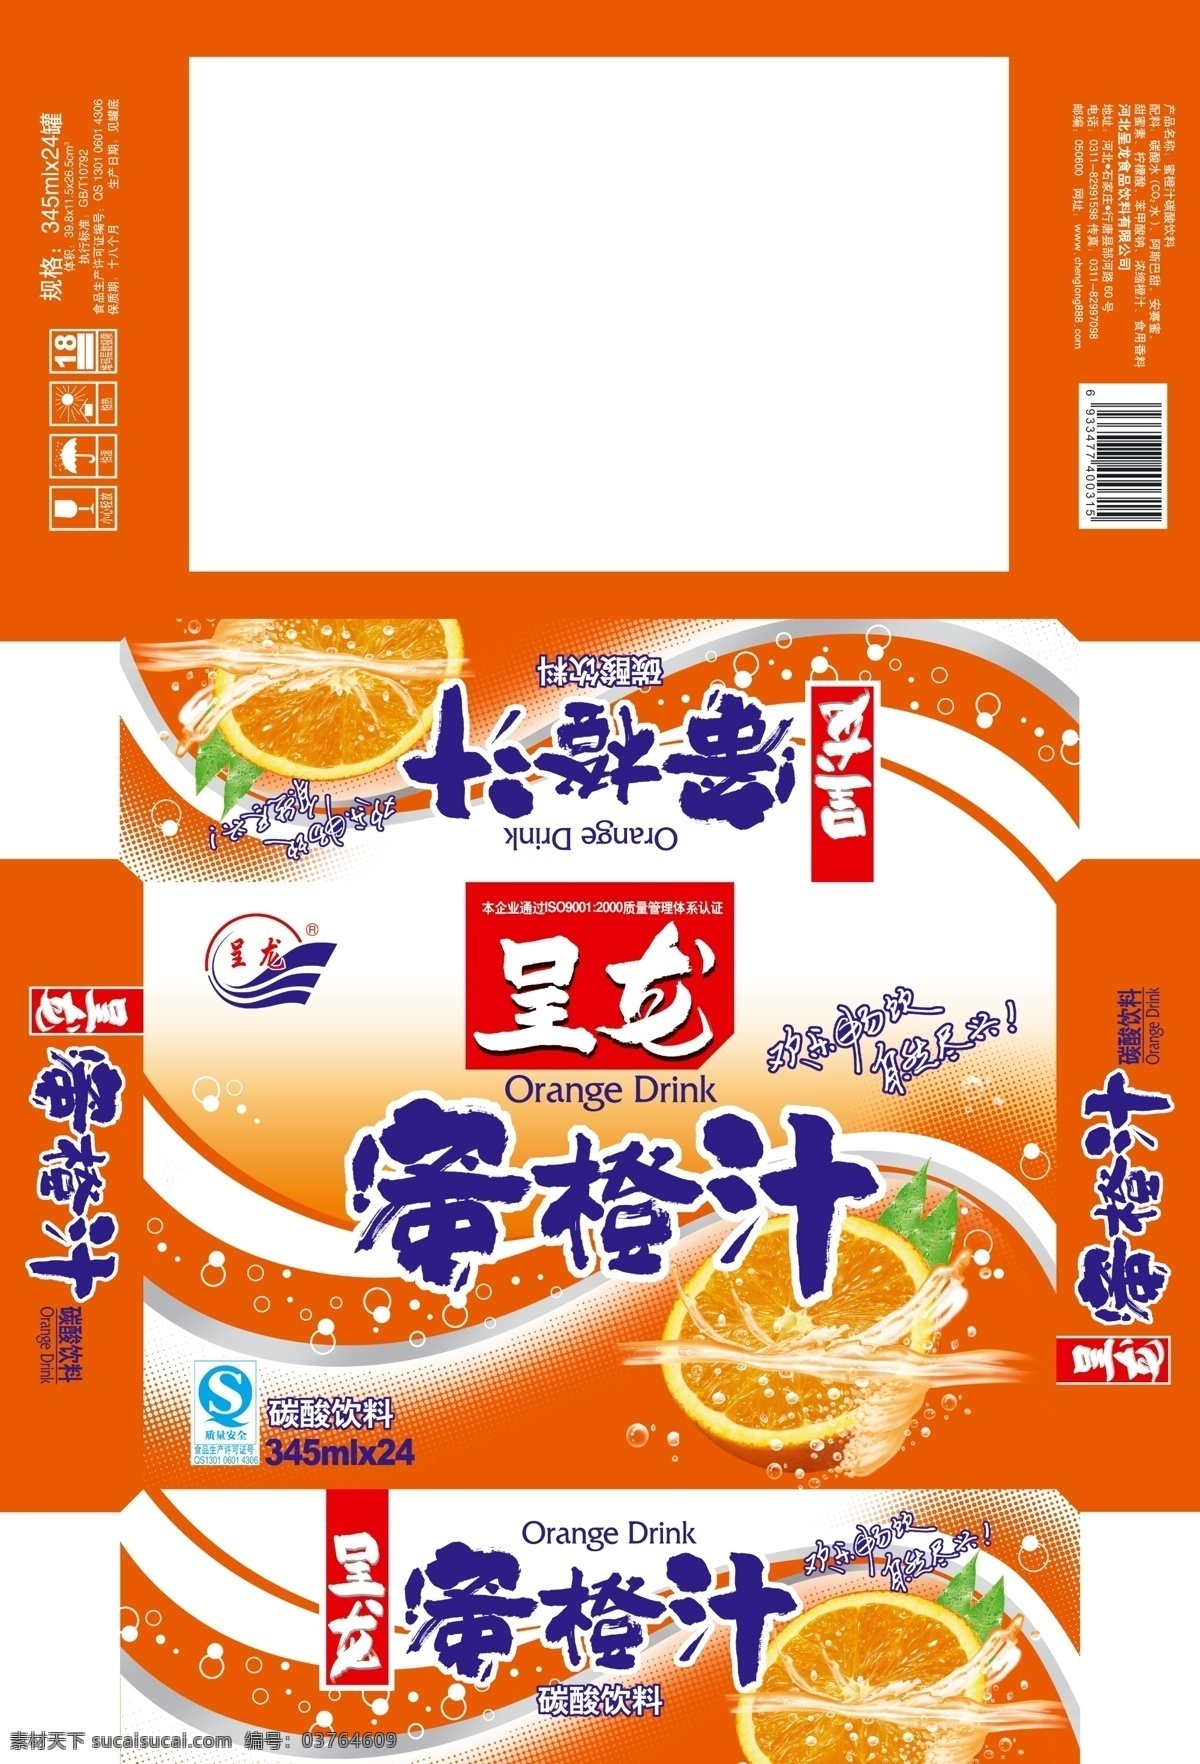 蜜橙汁外箱 橙汁包装 橙汁 易拉罐包装 易拉罐橙汁 碳酸饮料 易拉罐设计 饮料包装 包装设计 白色